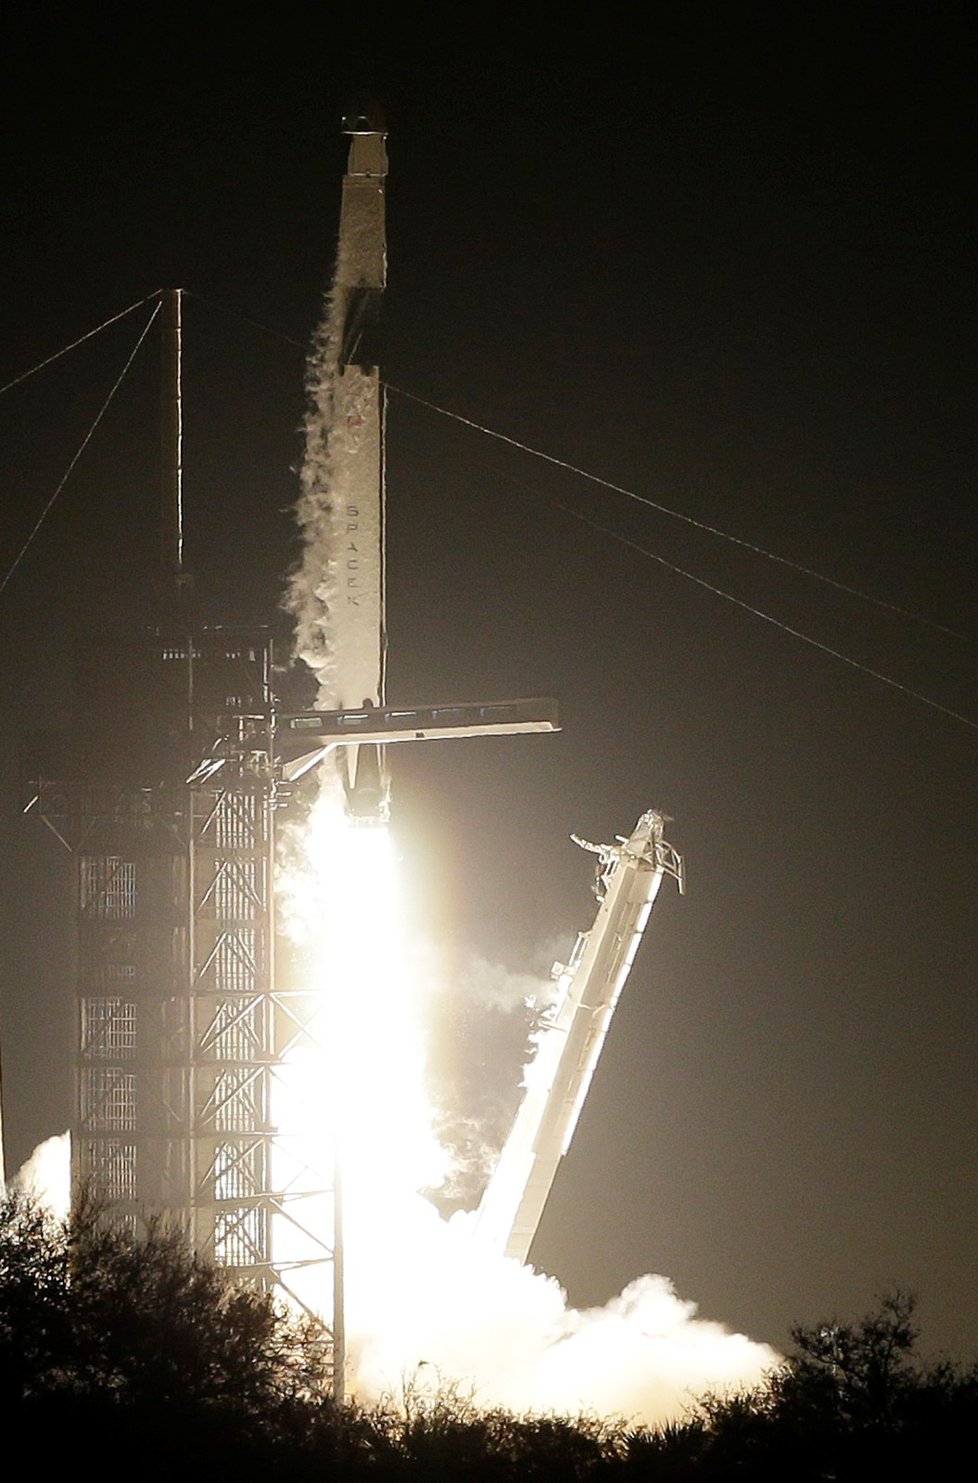 Z Kennedyho vesmírného střediska na Floridě dnes k prvnímu testovacímu letu odstartovala nová kosmická loď Crew Dragon soukromé americké společnosti SpaceX. (2.3.2019)